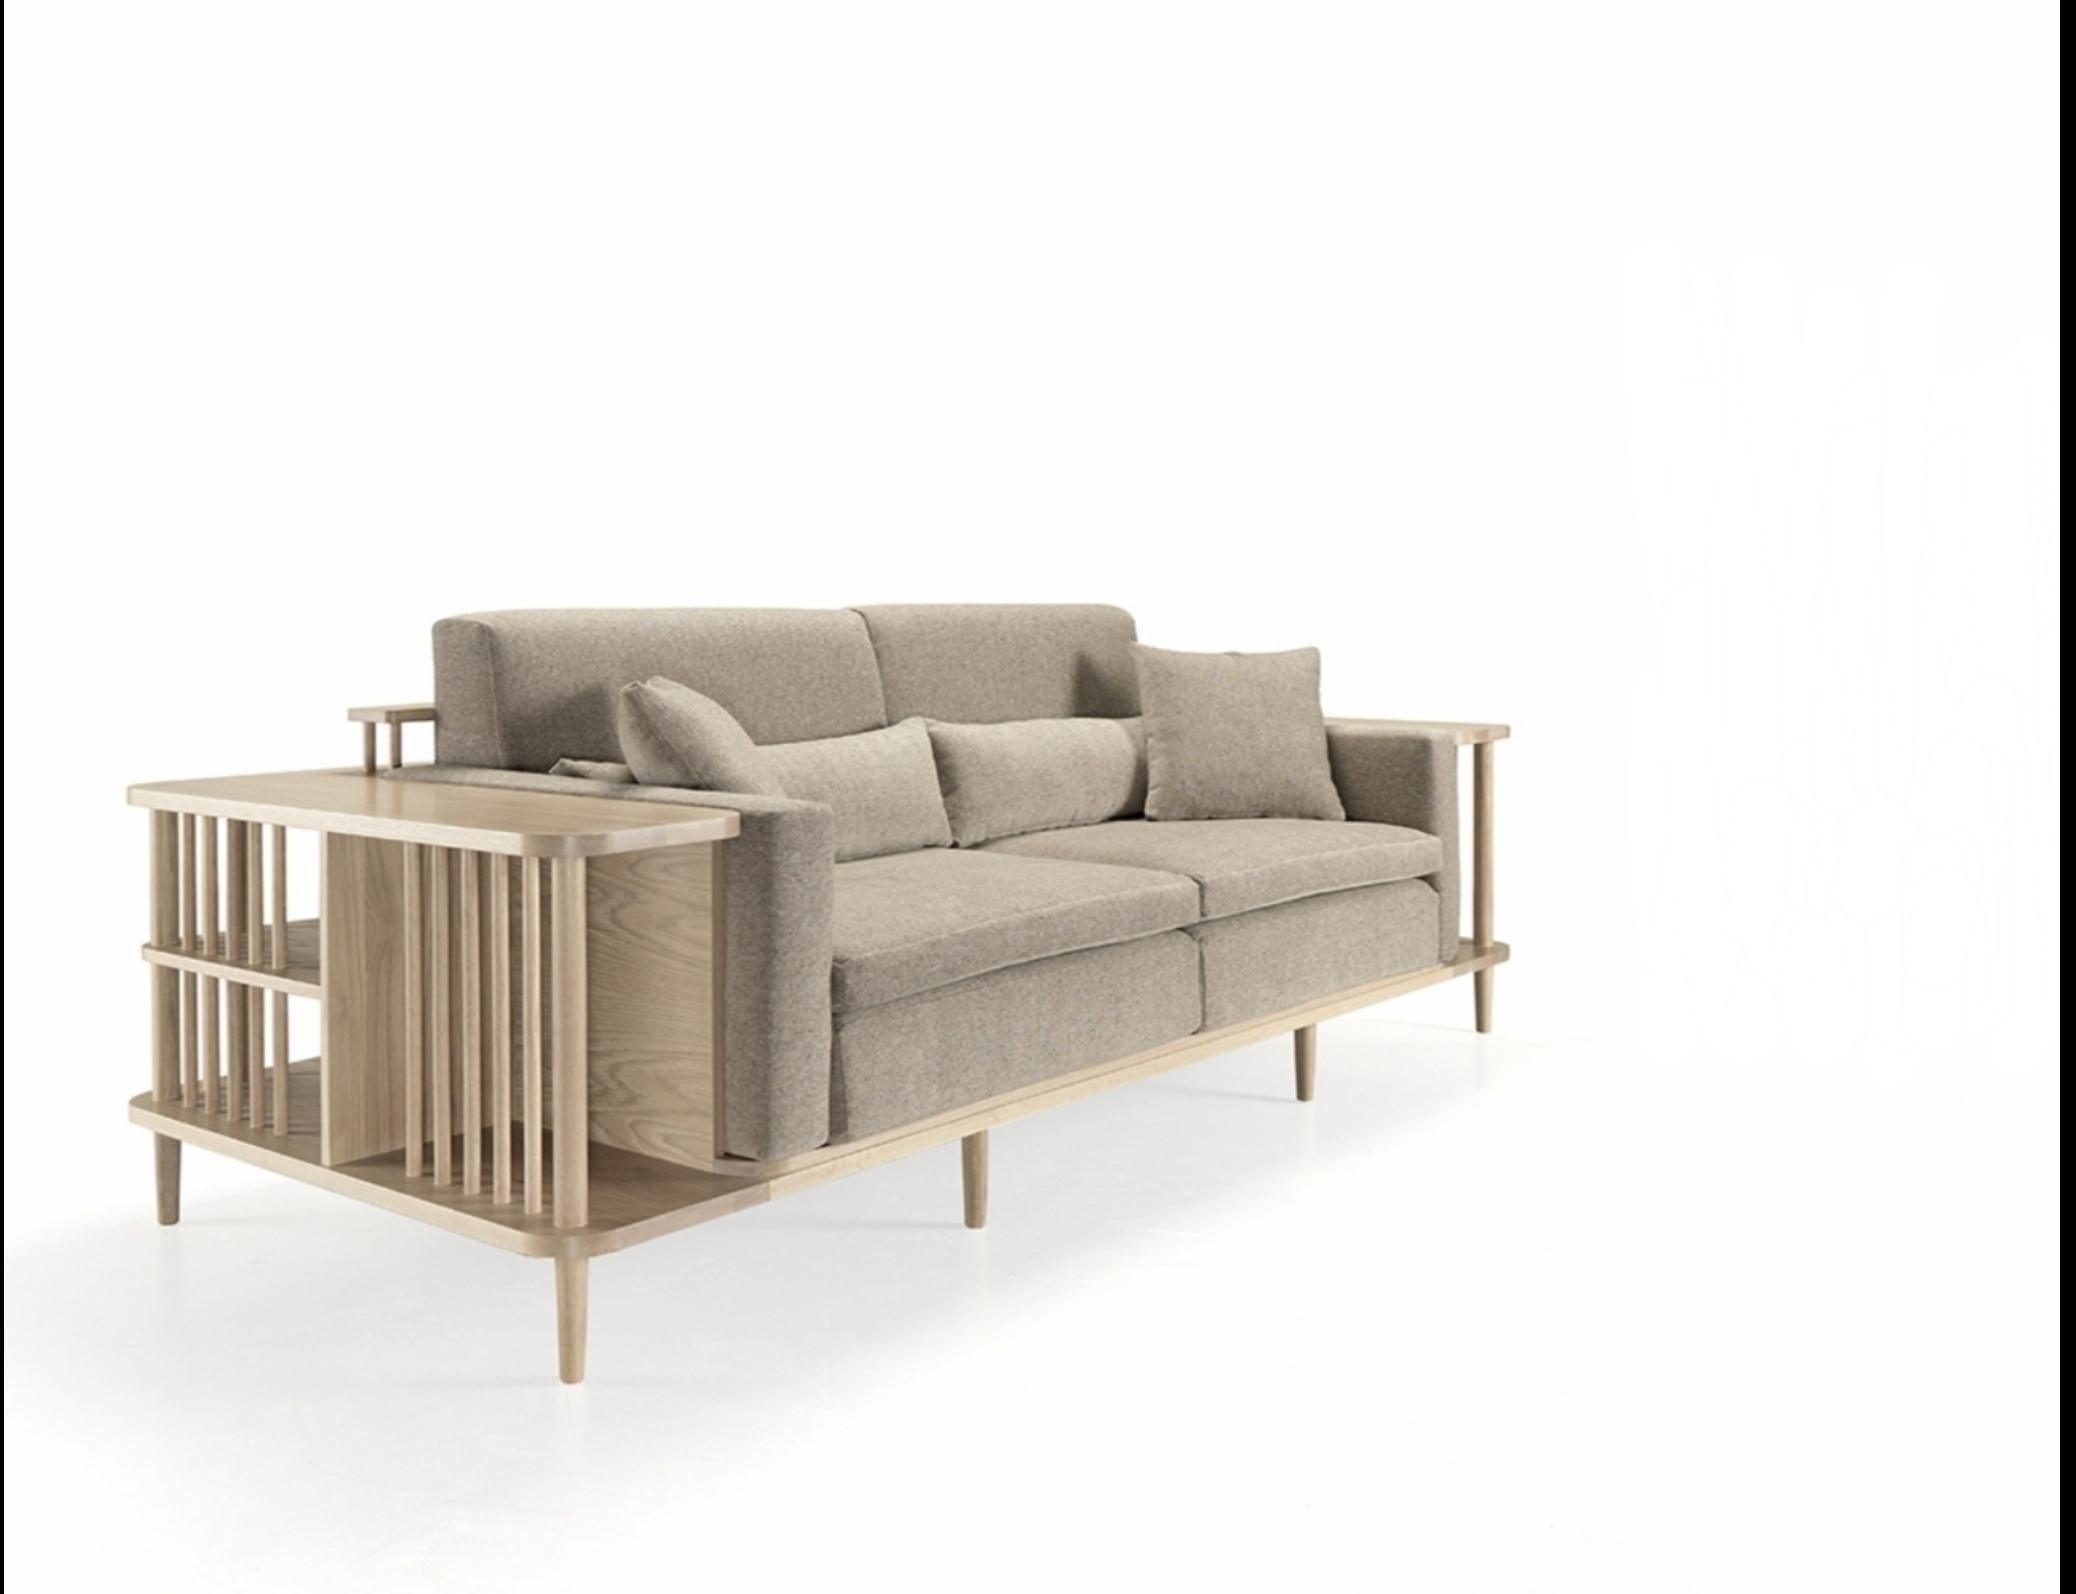 Ein atemberaubend schönes, bequemes Sofa mit umlaufendem Holzrahmen aus Massivholz. Ein Sofa, ein Bücherregal und auch ein Raumteiler, perfekt für einen exklusiven Raum.
Die Kissen lassen sich leicht abnehmen.
Verpackt in einer Sperrholzkiste. Sie